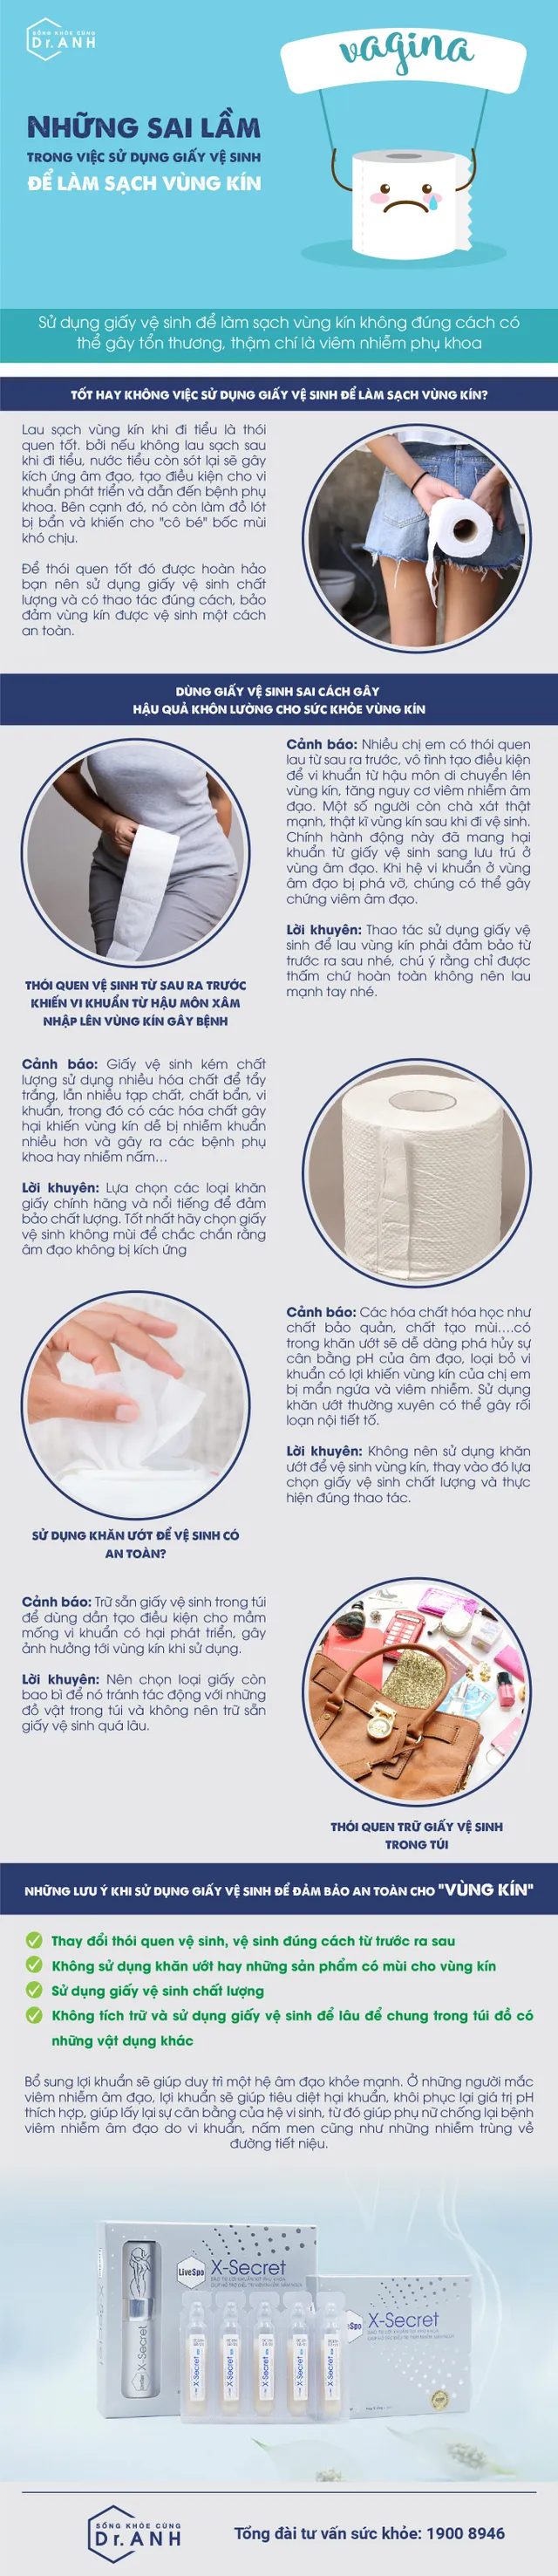 Những sai lầm trong việc sử dụng giấy vệ sinh để làm sạch vùng kín - Ảnh 1.